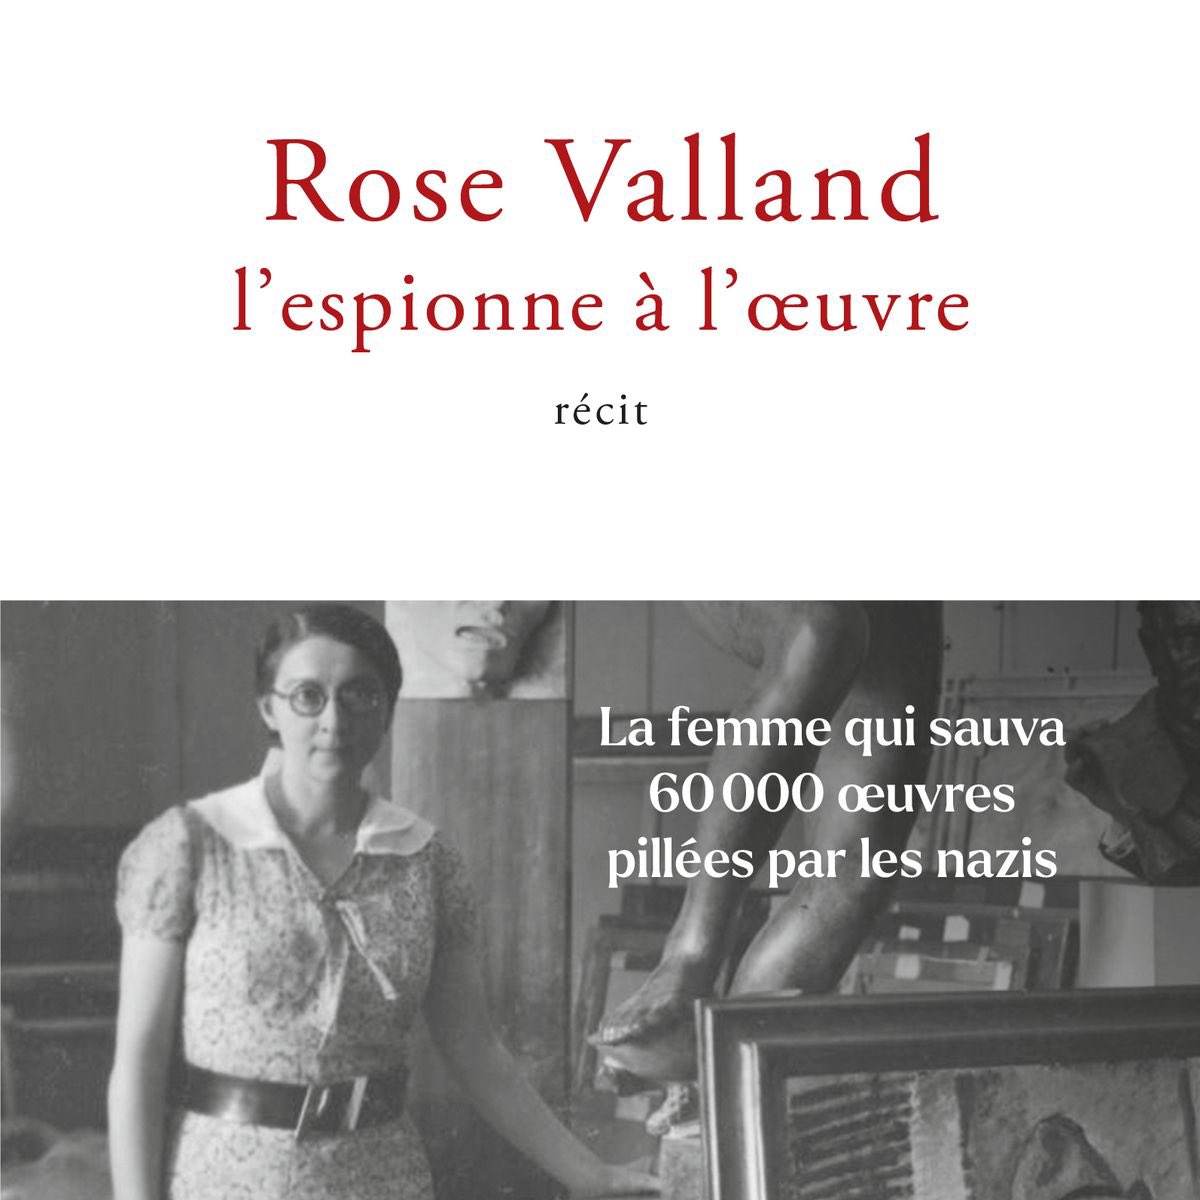 #Replay #lecturedété : Rose Valland a sauvé 60.000 œuvres pillées par les nazis sous l’Occupation. @JenniferLesieur redonne à cette héroïne oubliée la place qu'elle mérite dans l'Histoire en lui consacrant une passionnante biographie.
➡️ rtl.fr/programmes/lai…